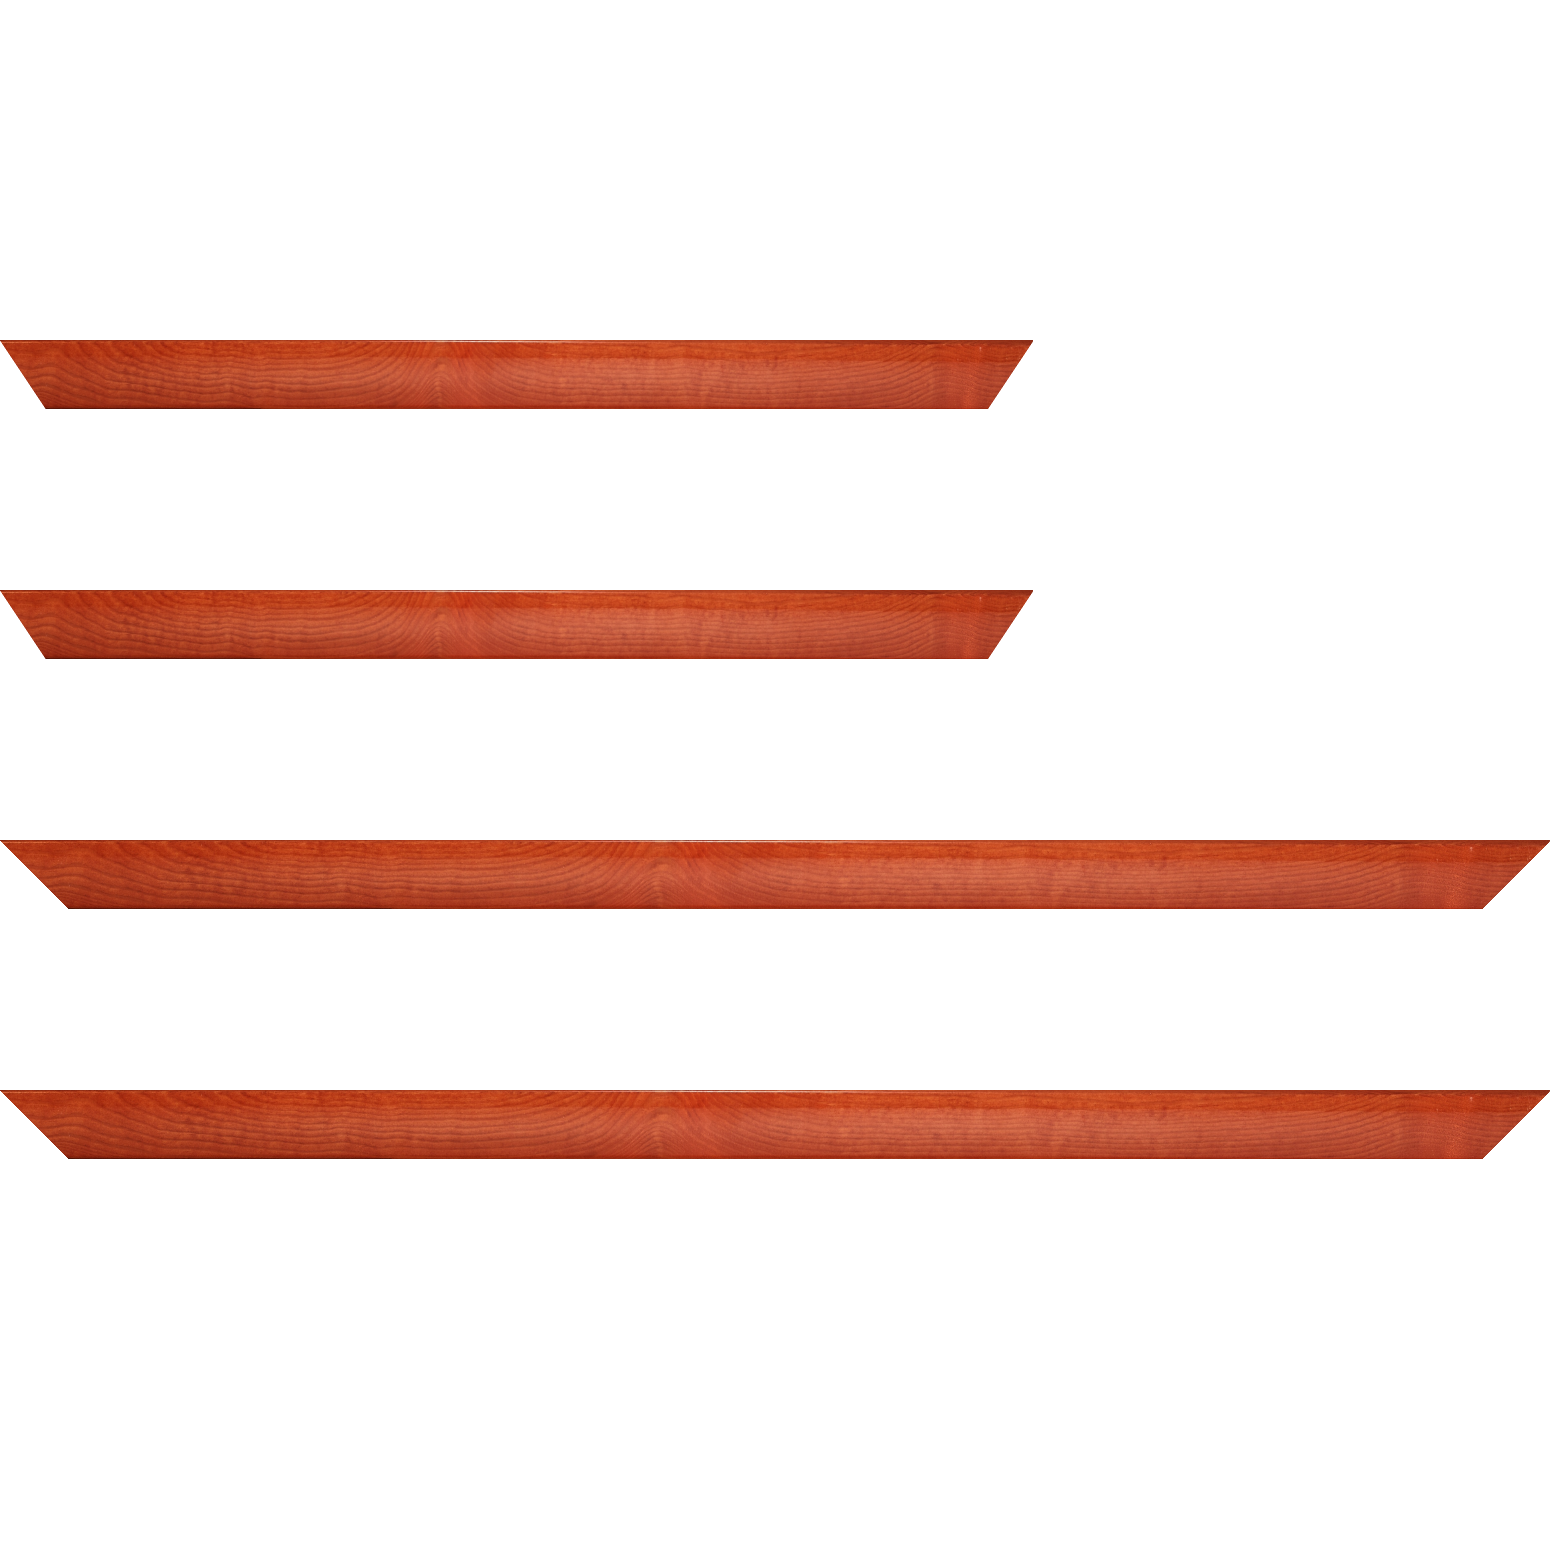 Baguette bois profil arrondi en pente plongeant largeur 2.4cm couleur orange finition vernis brillant,veine du bois  apparent (pin) , - 59.4x84.1